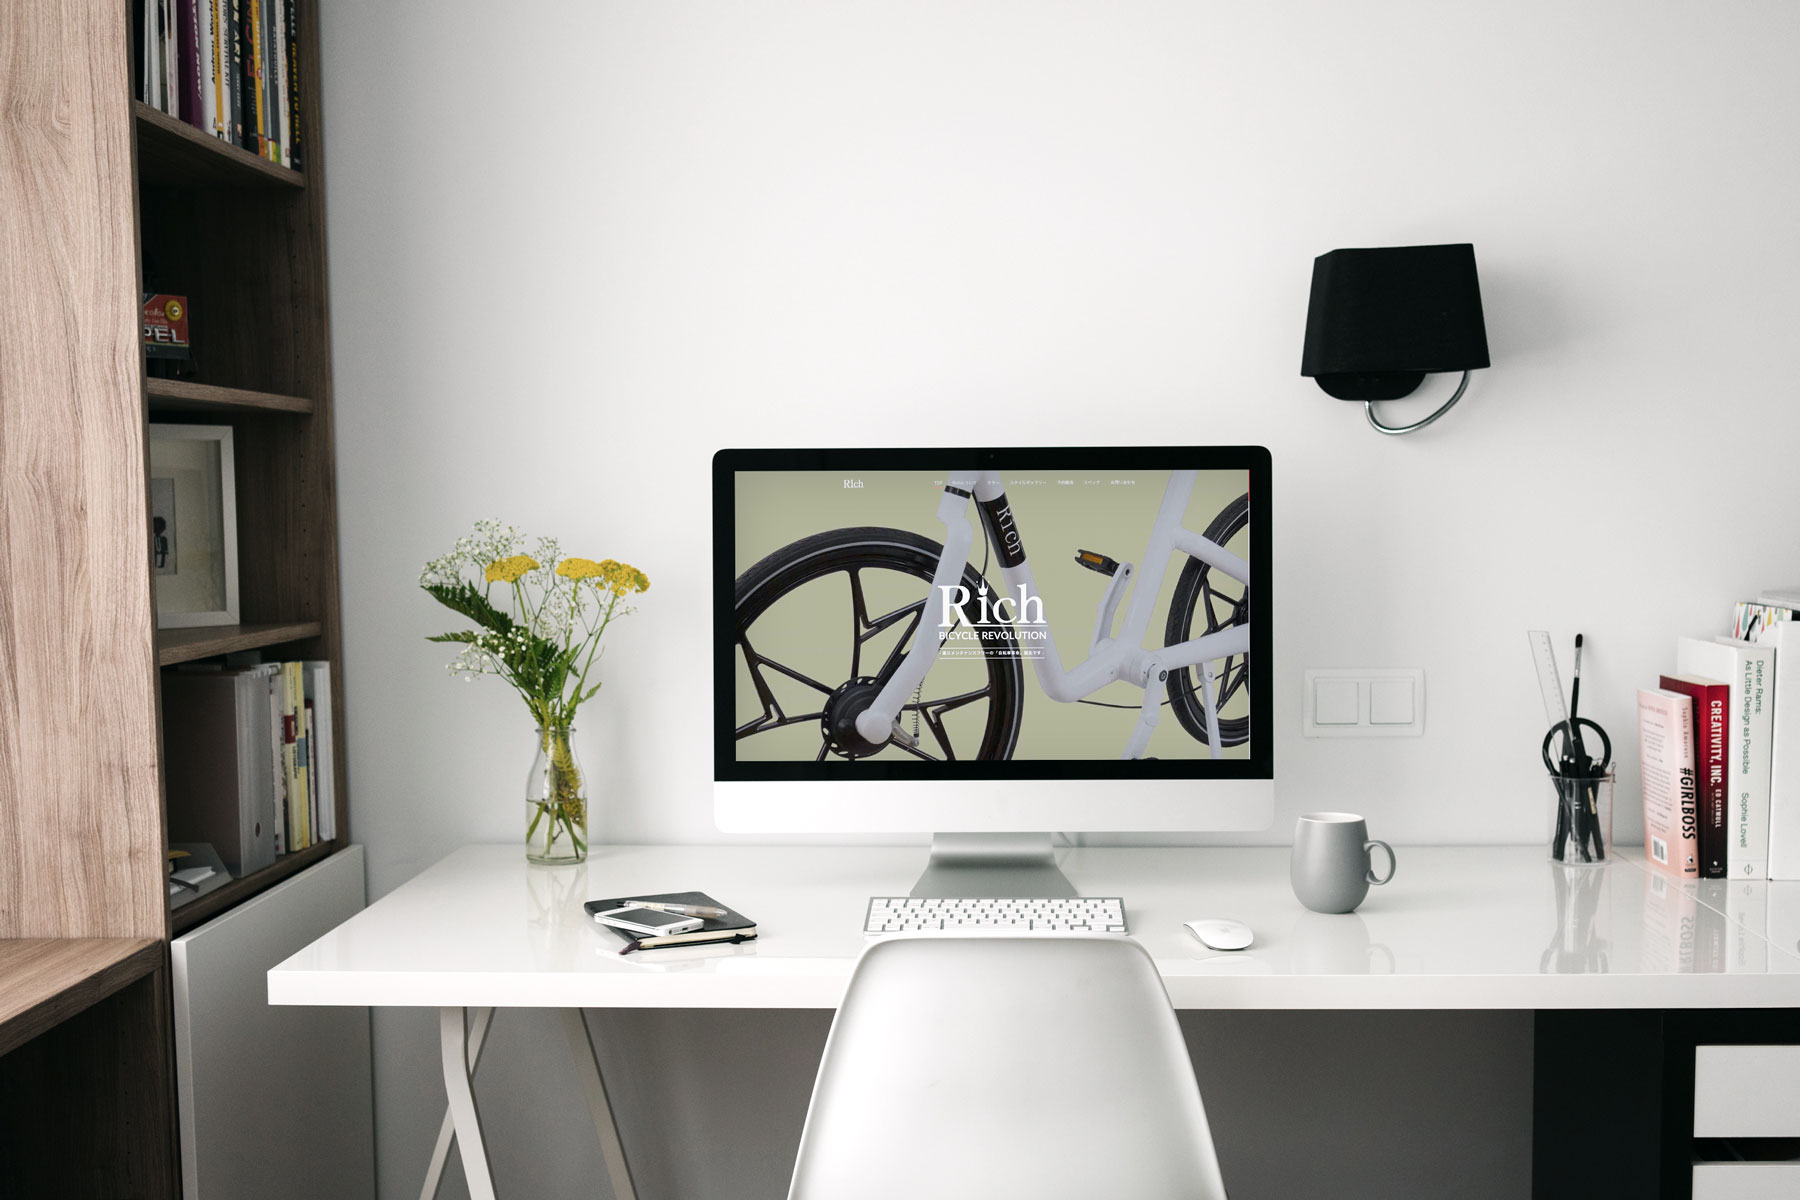 メンテナンスフリー自転車Richのトップページウェブデザインがパソコンに映っている書斎のインテリア写真